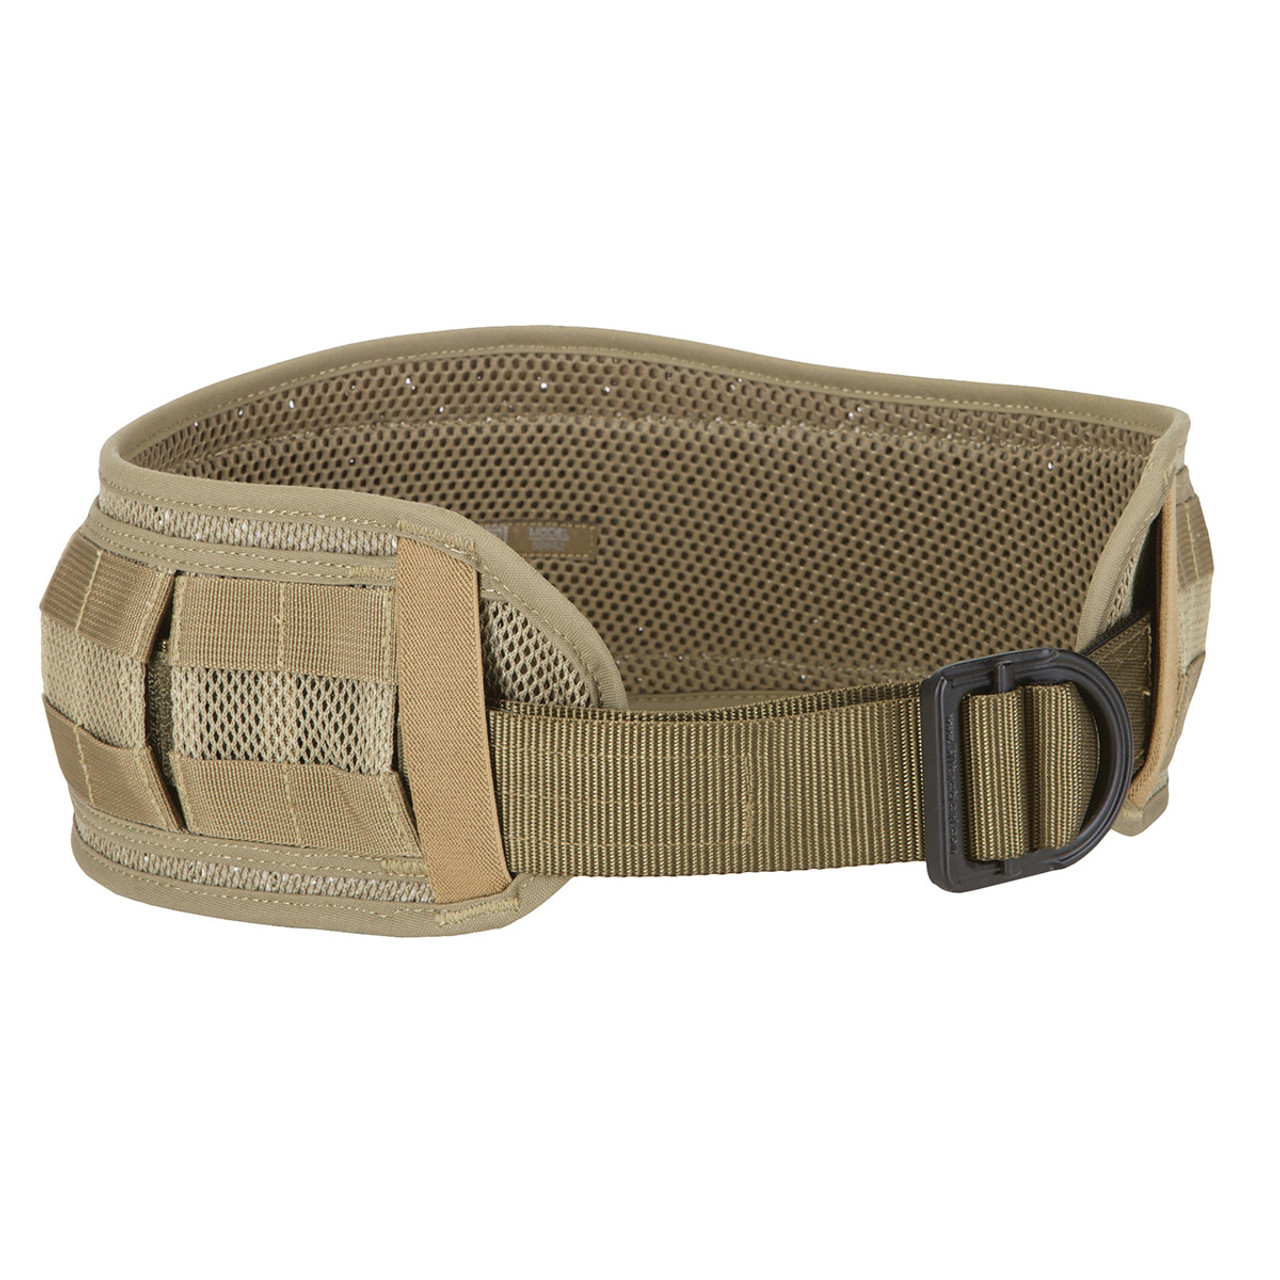 Shop 5.11 Tactical Combat Belt at